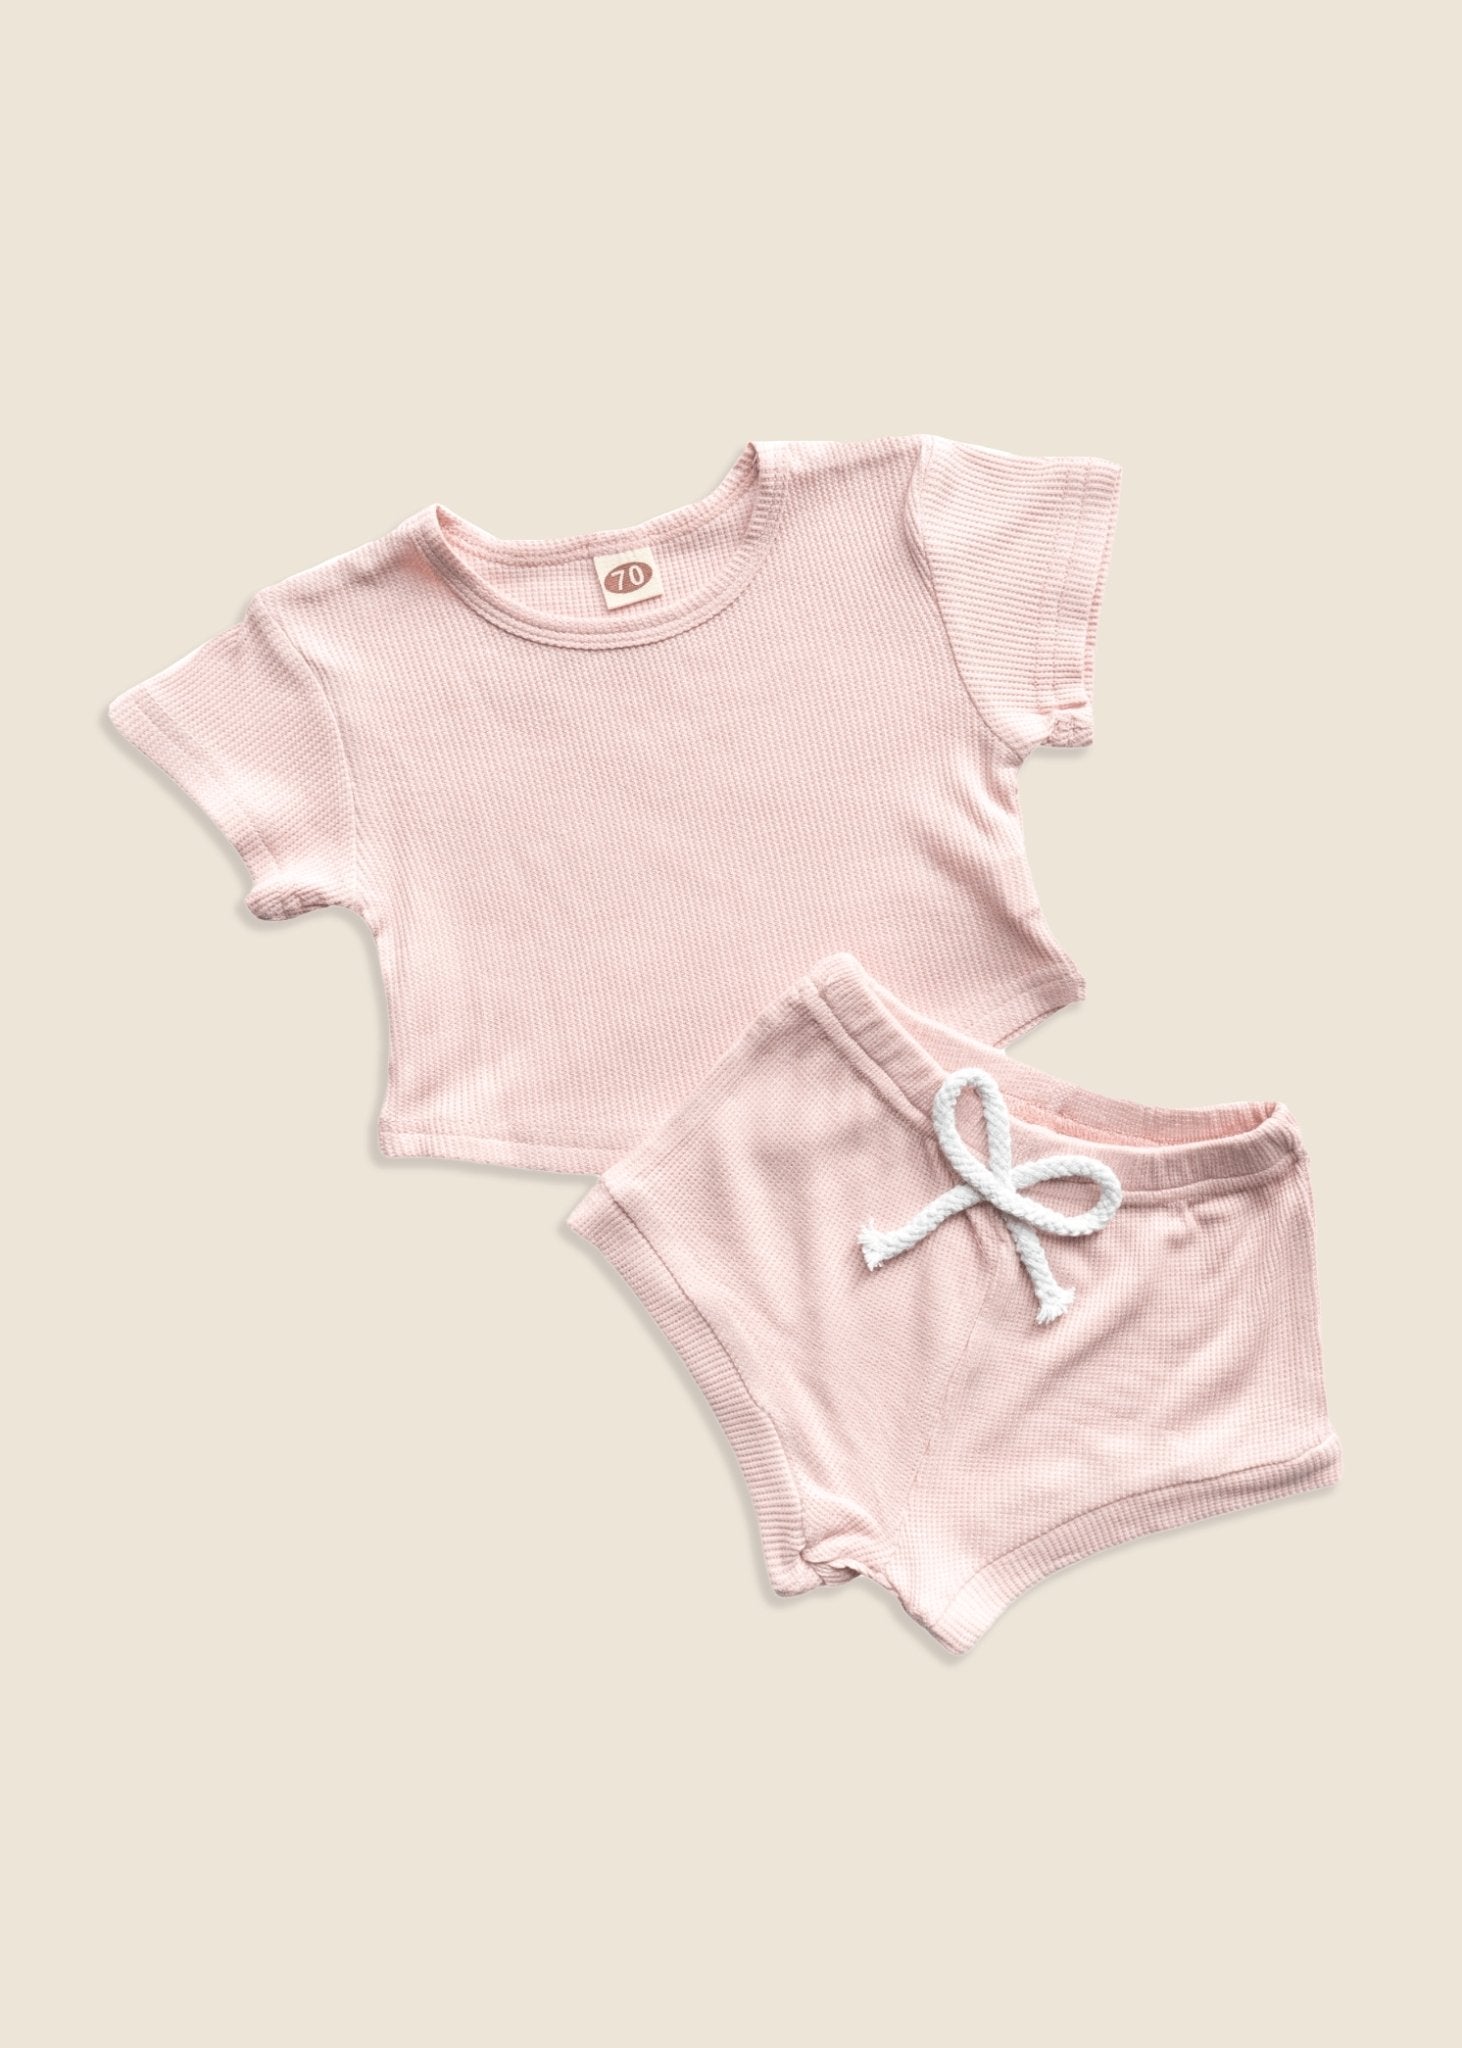 MORGAN Ribbed T-Shirt + Shorts Set - Pale Pink - Rocco & The Fox